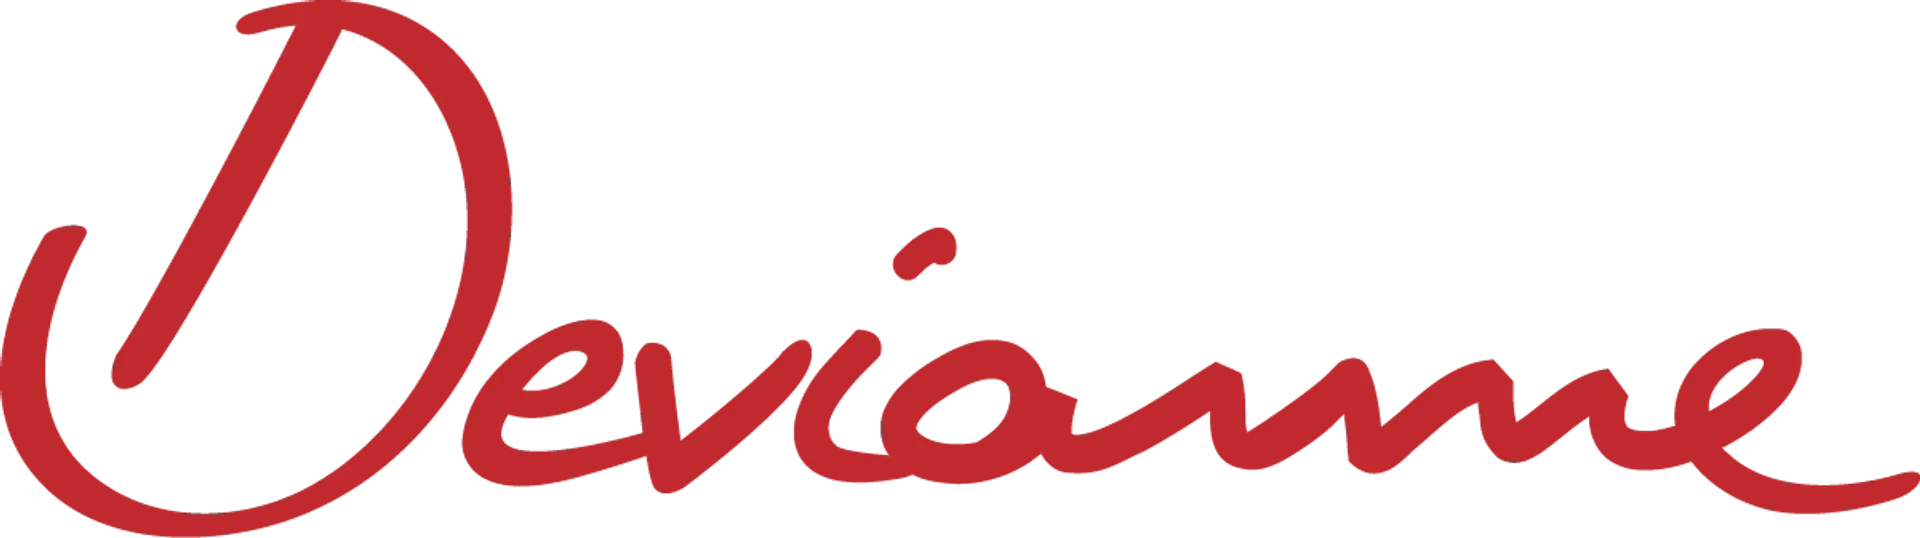 MARQUES & VOUS logo du catalogue